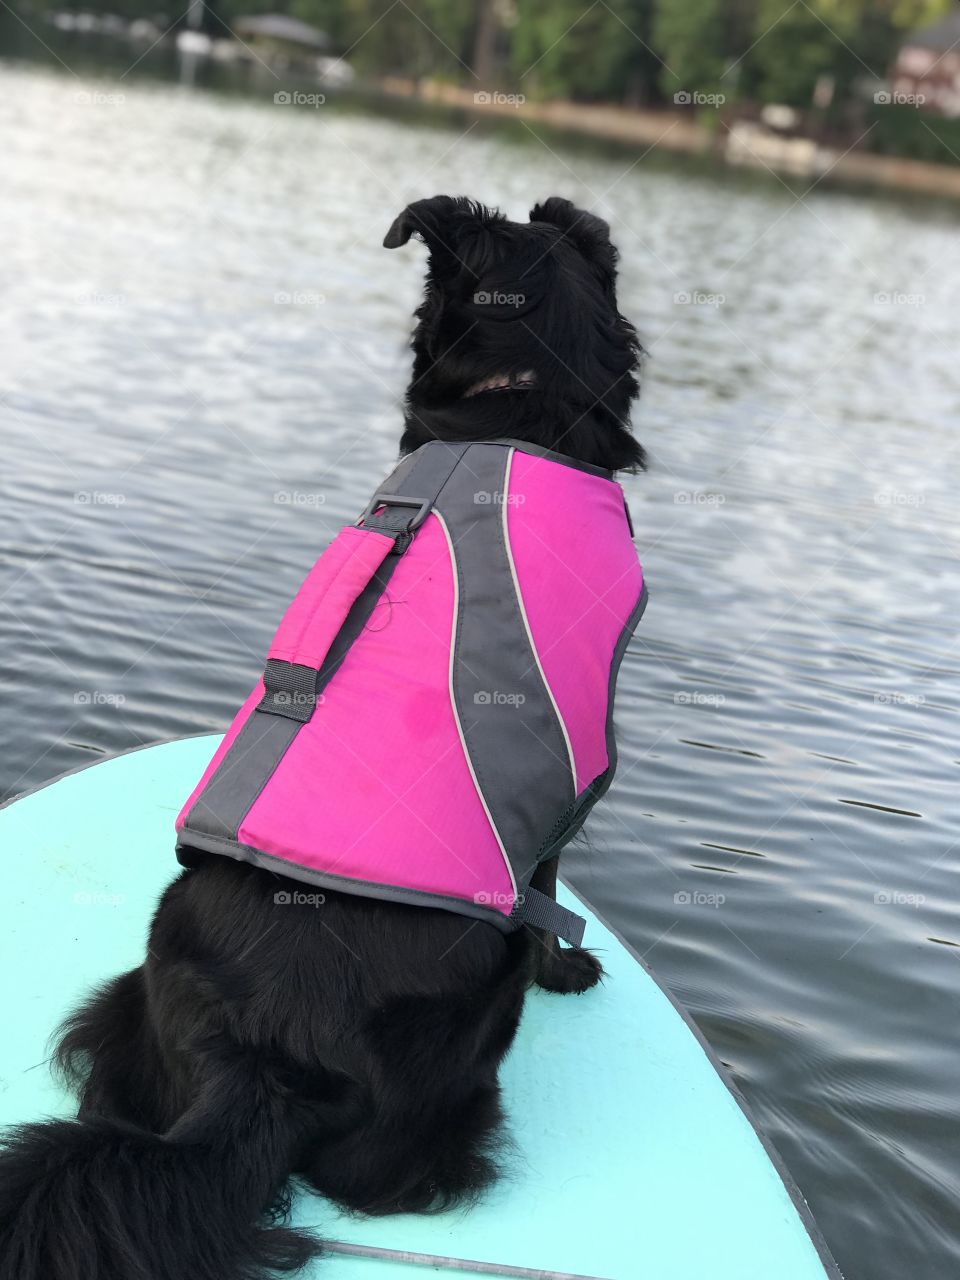 Paddle boarding Dog